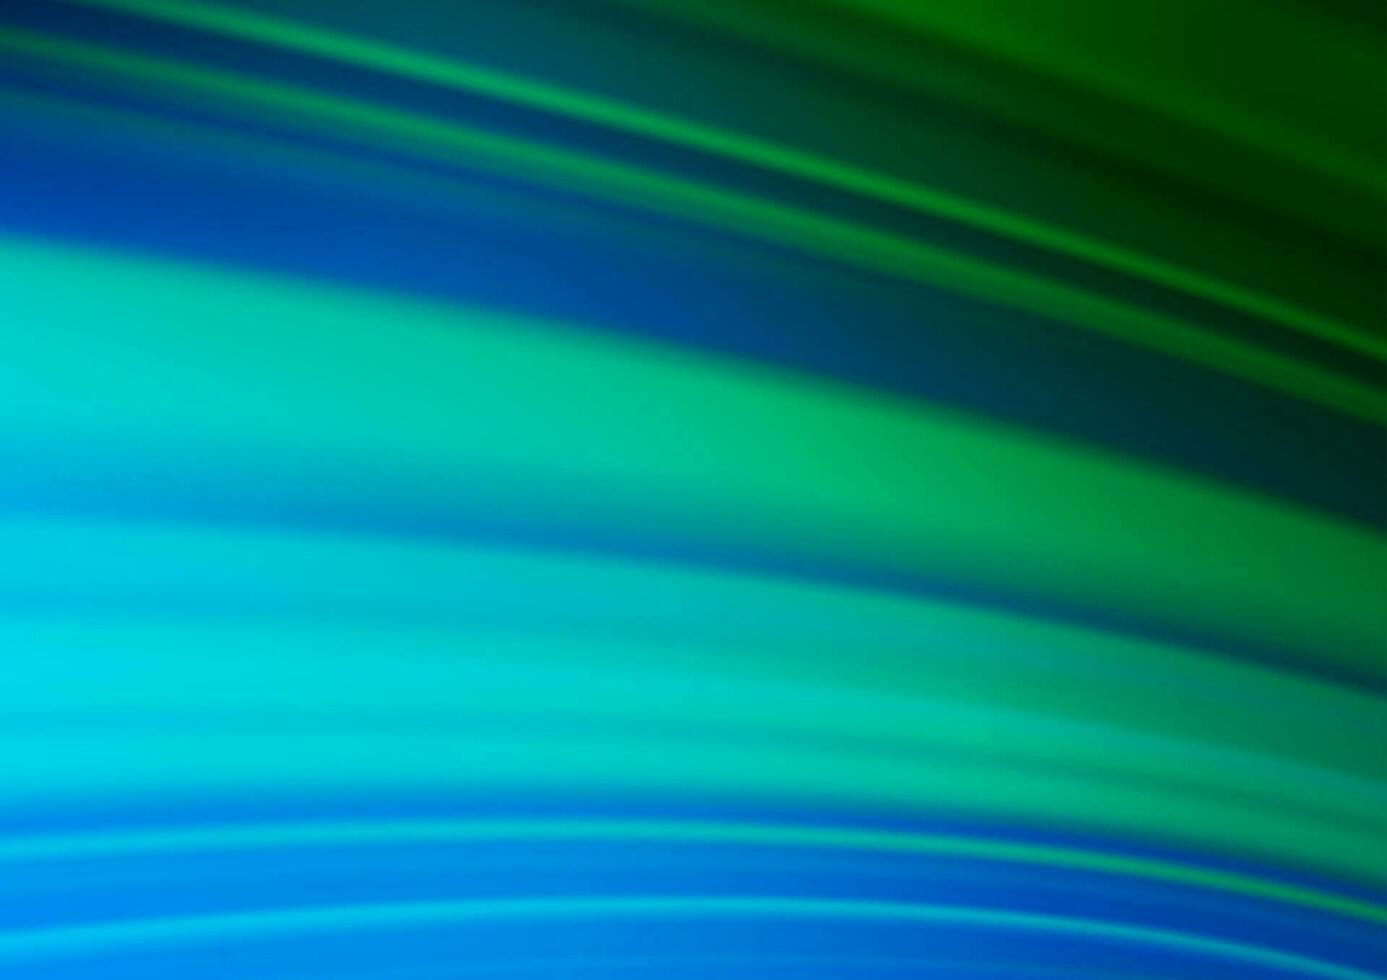 plantilla elegante moderna del vector azul claro, verde.